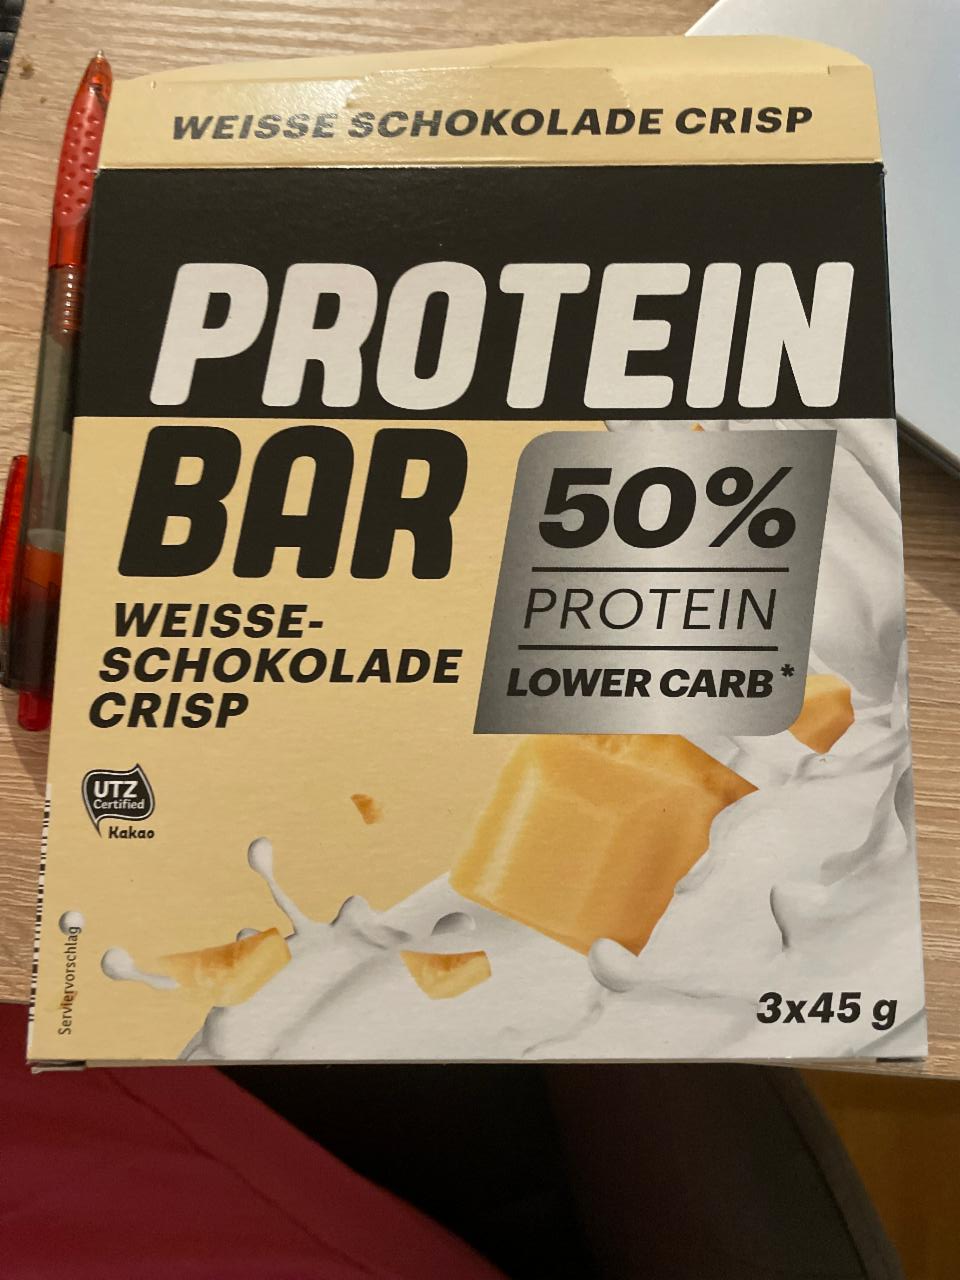 Фото - протеиновый батончик с белым шоколадом Protein Bar 50% Lidl